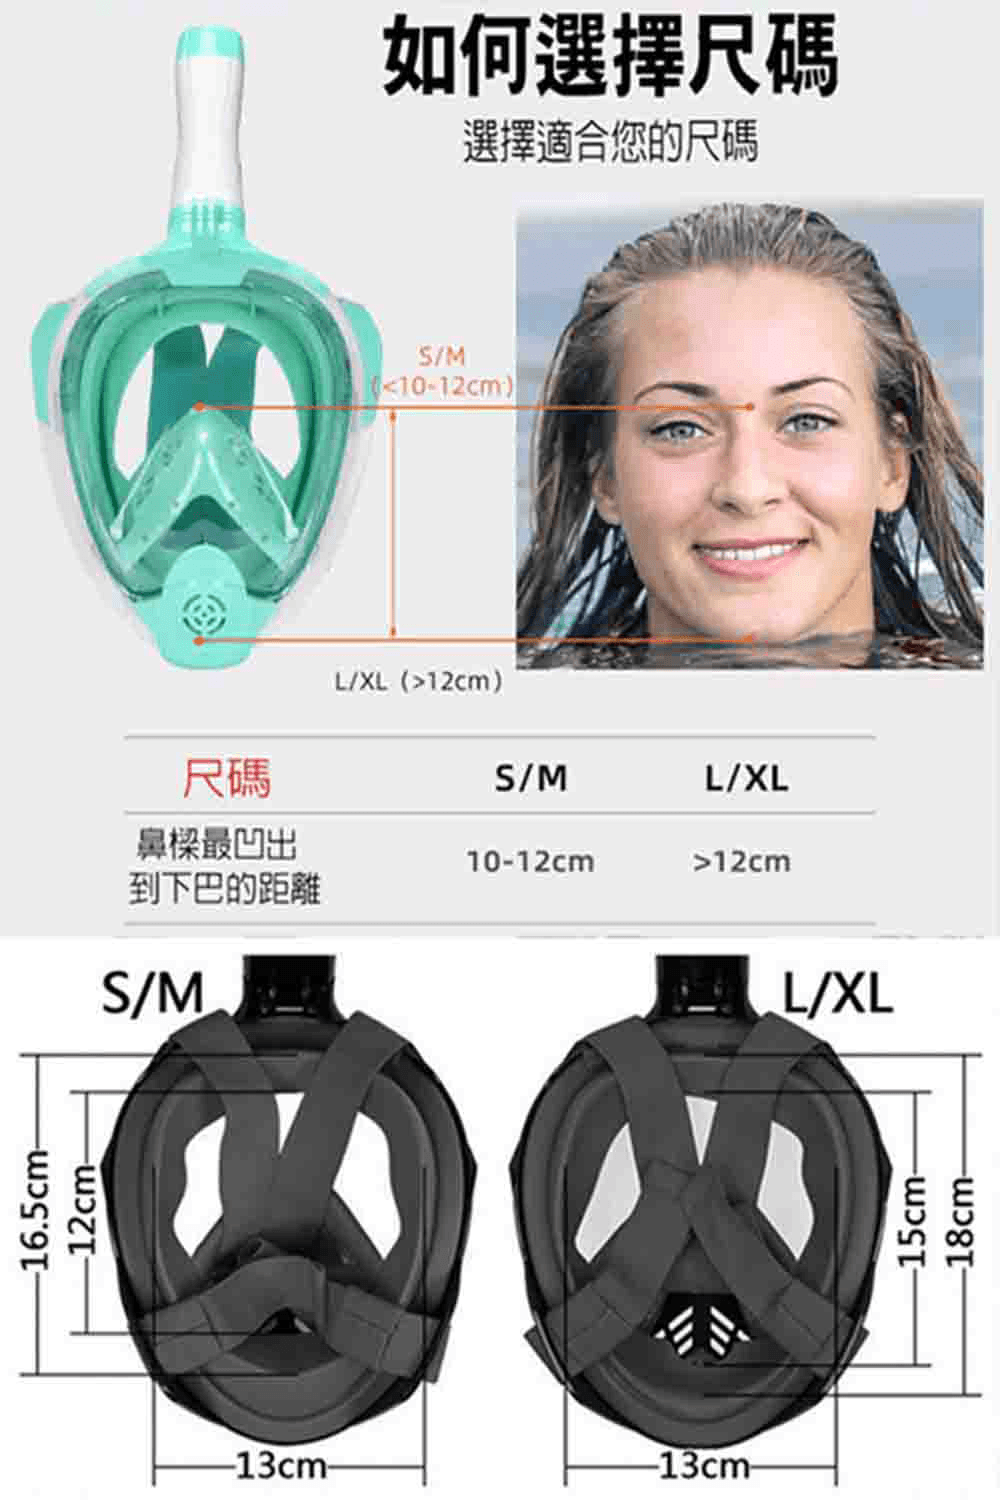 第二代 成人 全罩式浮潛呼吸面罩 折疊浮潛 鼻子呼吸管 游泳潜水神器【SV61233】 4